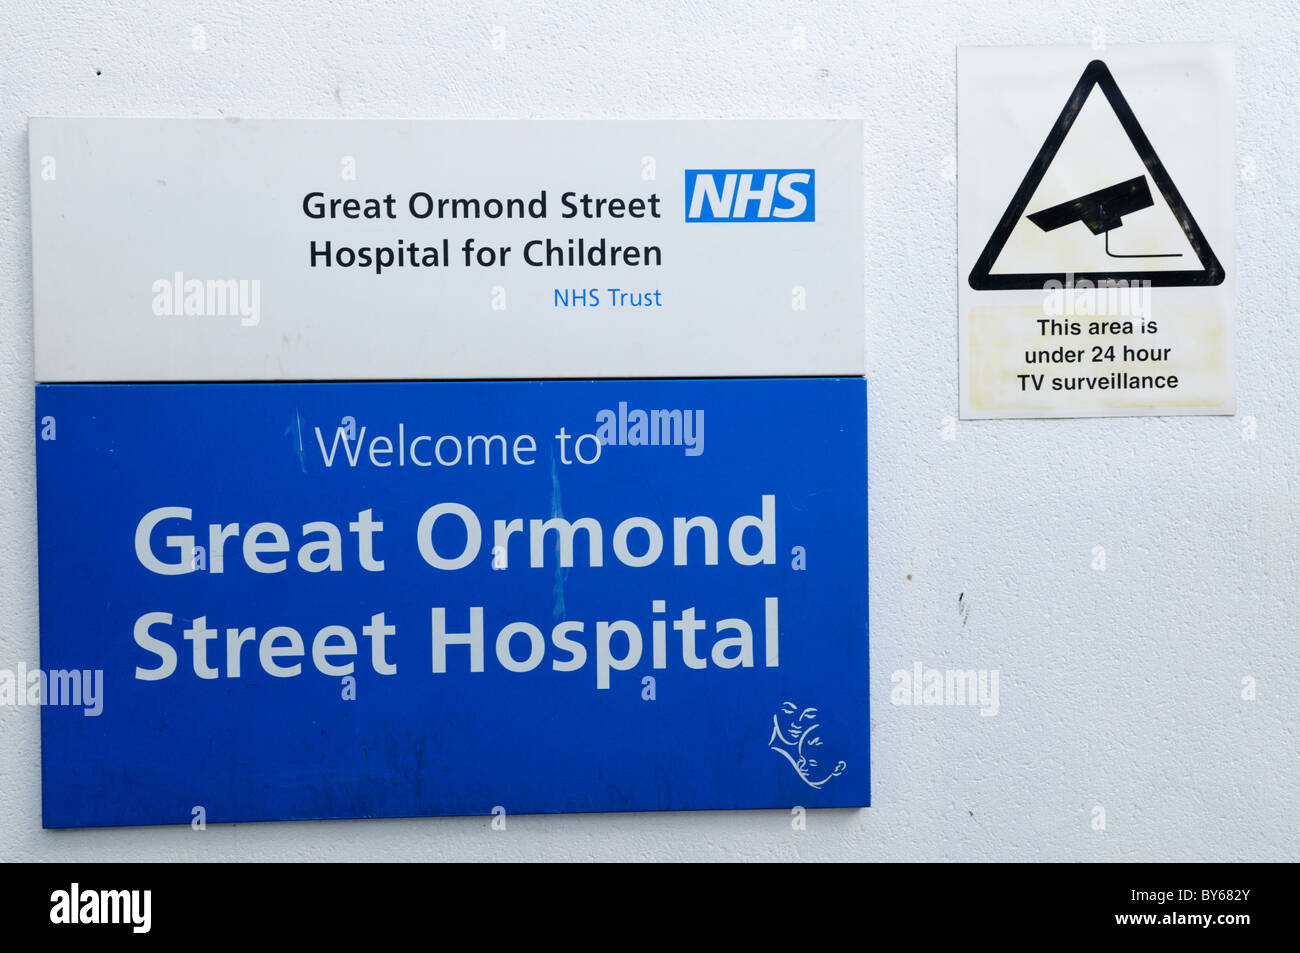 Willkommen Sie im Great Ormond Street Hospital Zeichen und CCTV Überwachung Warnung Hinweis, London, England, UK Stockfoto